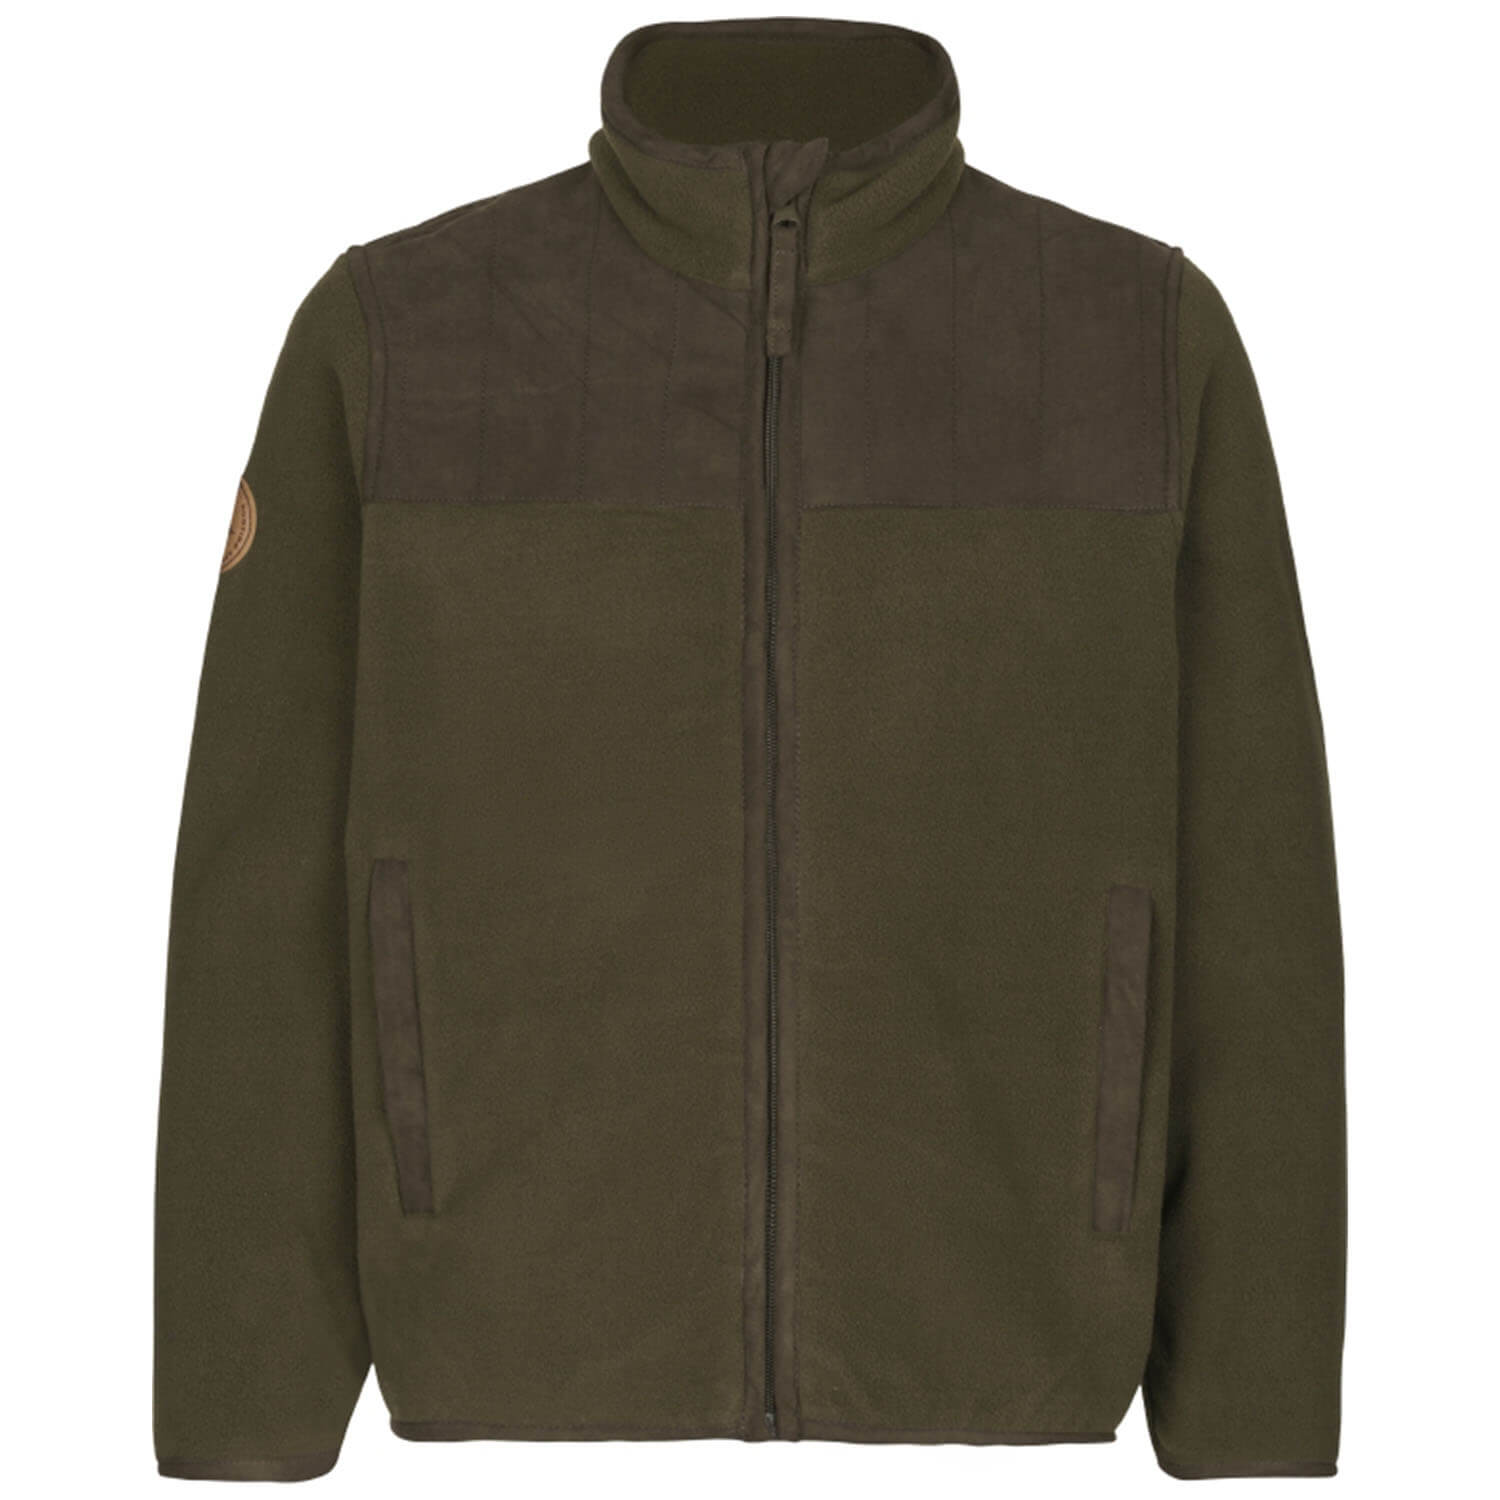  Seeland fleece jacket Bolt Junior (Pine Green)